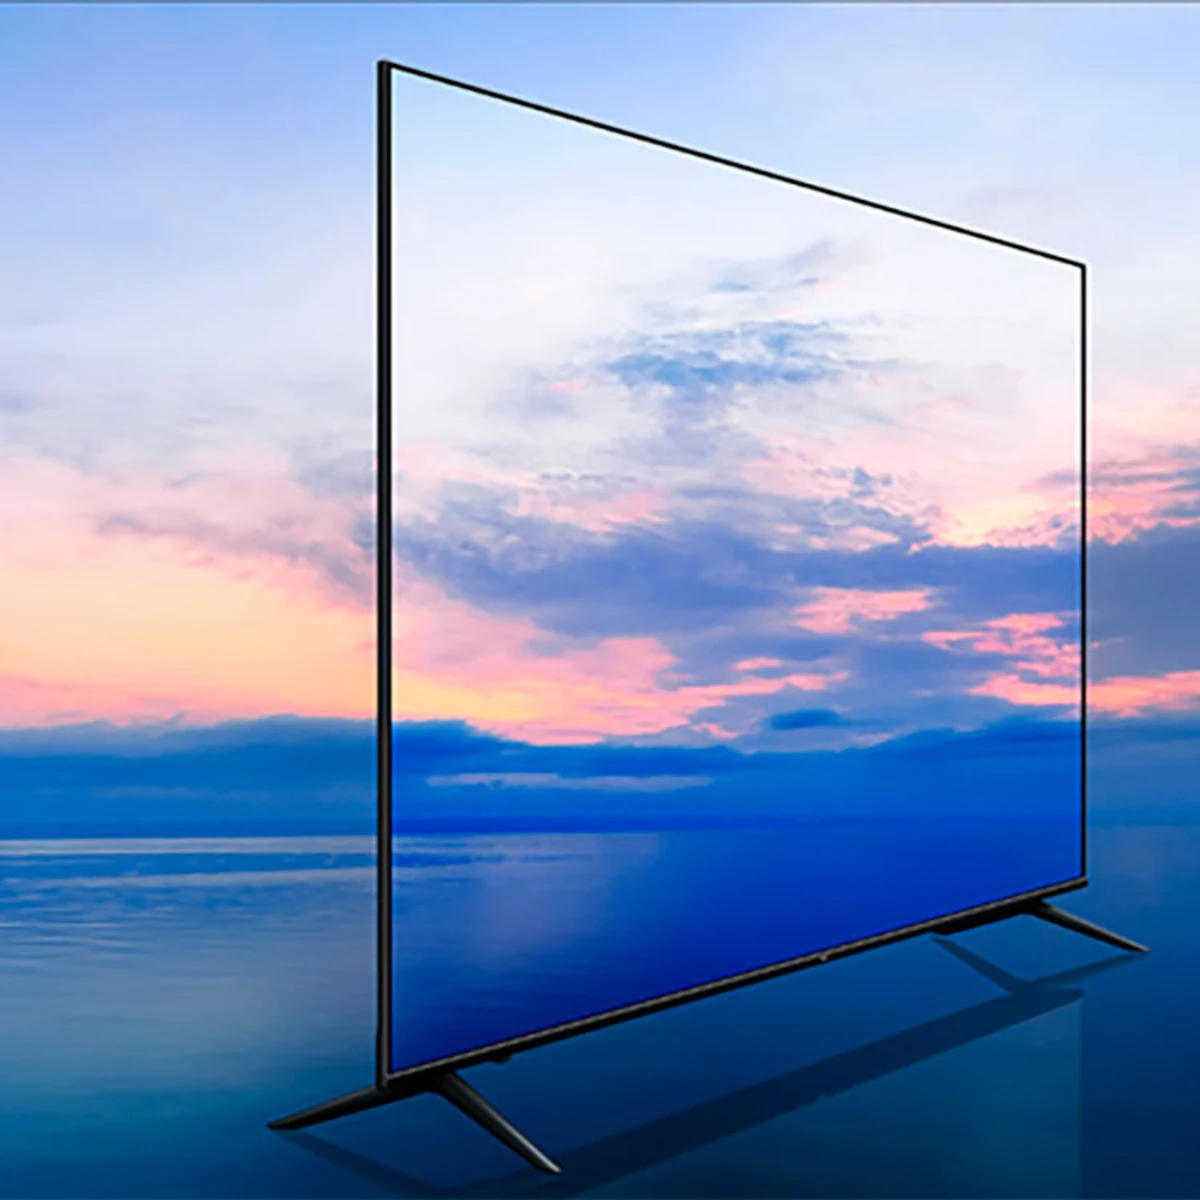 Esta smart TV de 55 pulgadas con imágenes 4K cuesta solo 400 euros: la  firma Xiaomi